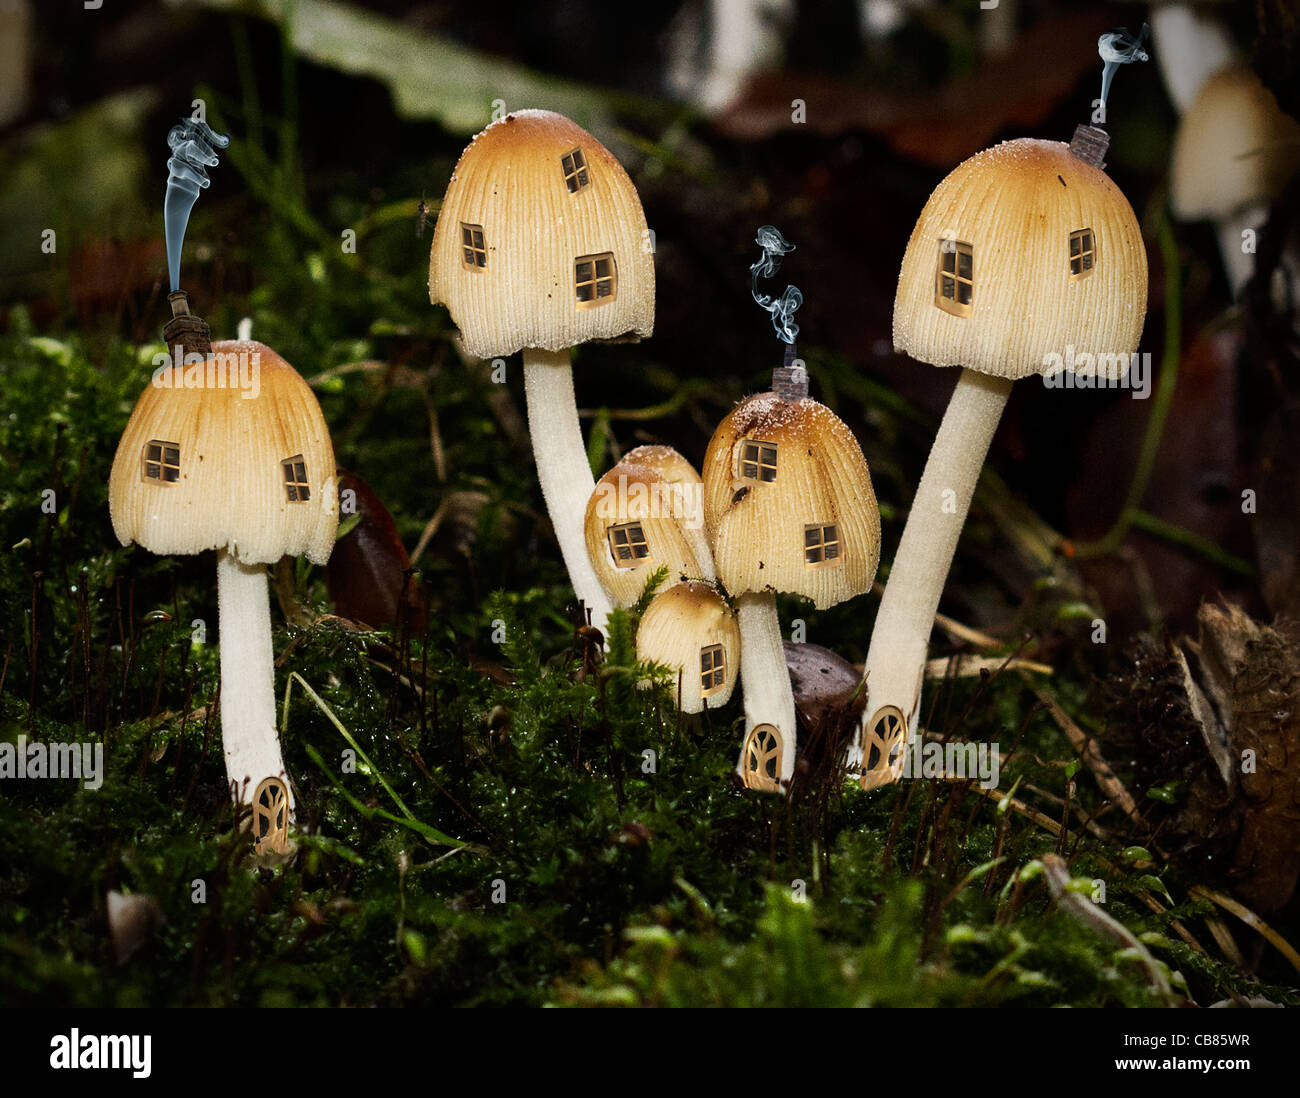 Mushroom houses fairy tale houses with smoke Stock Photo